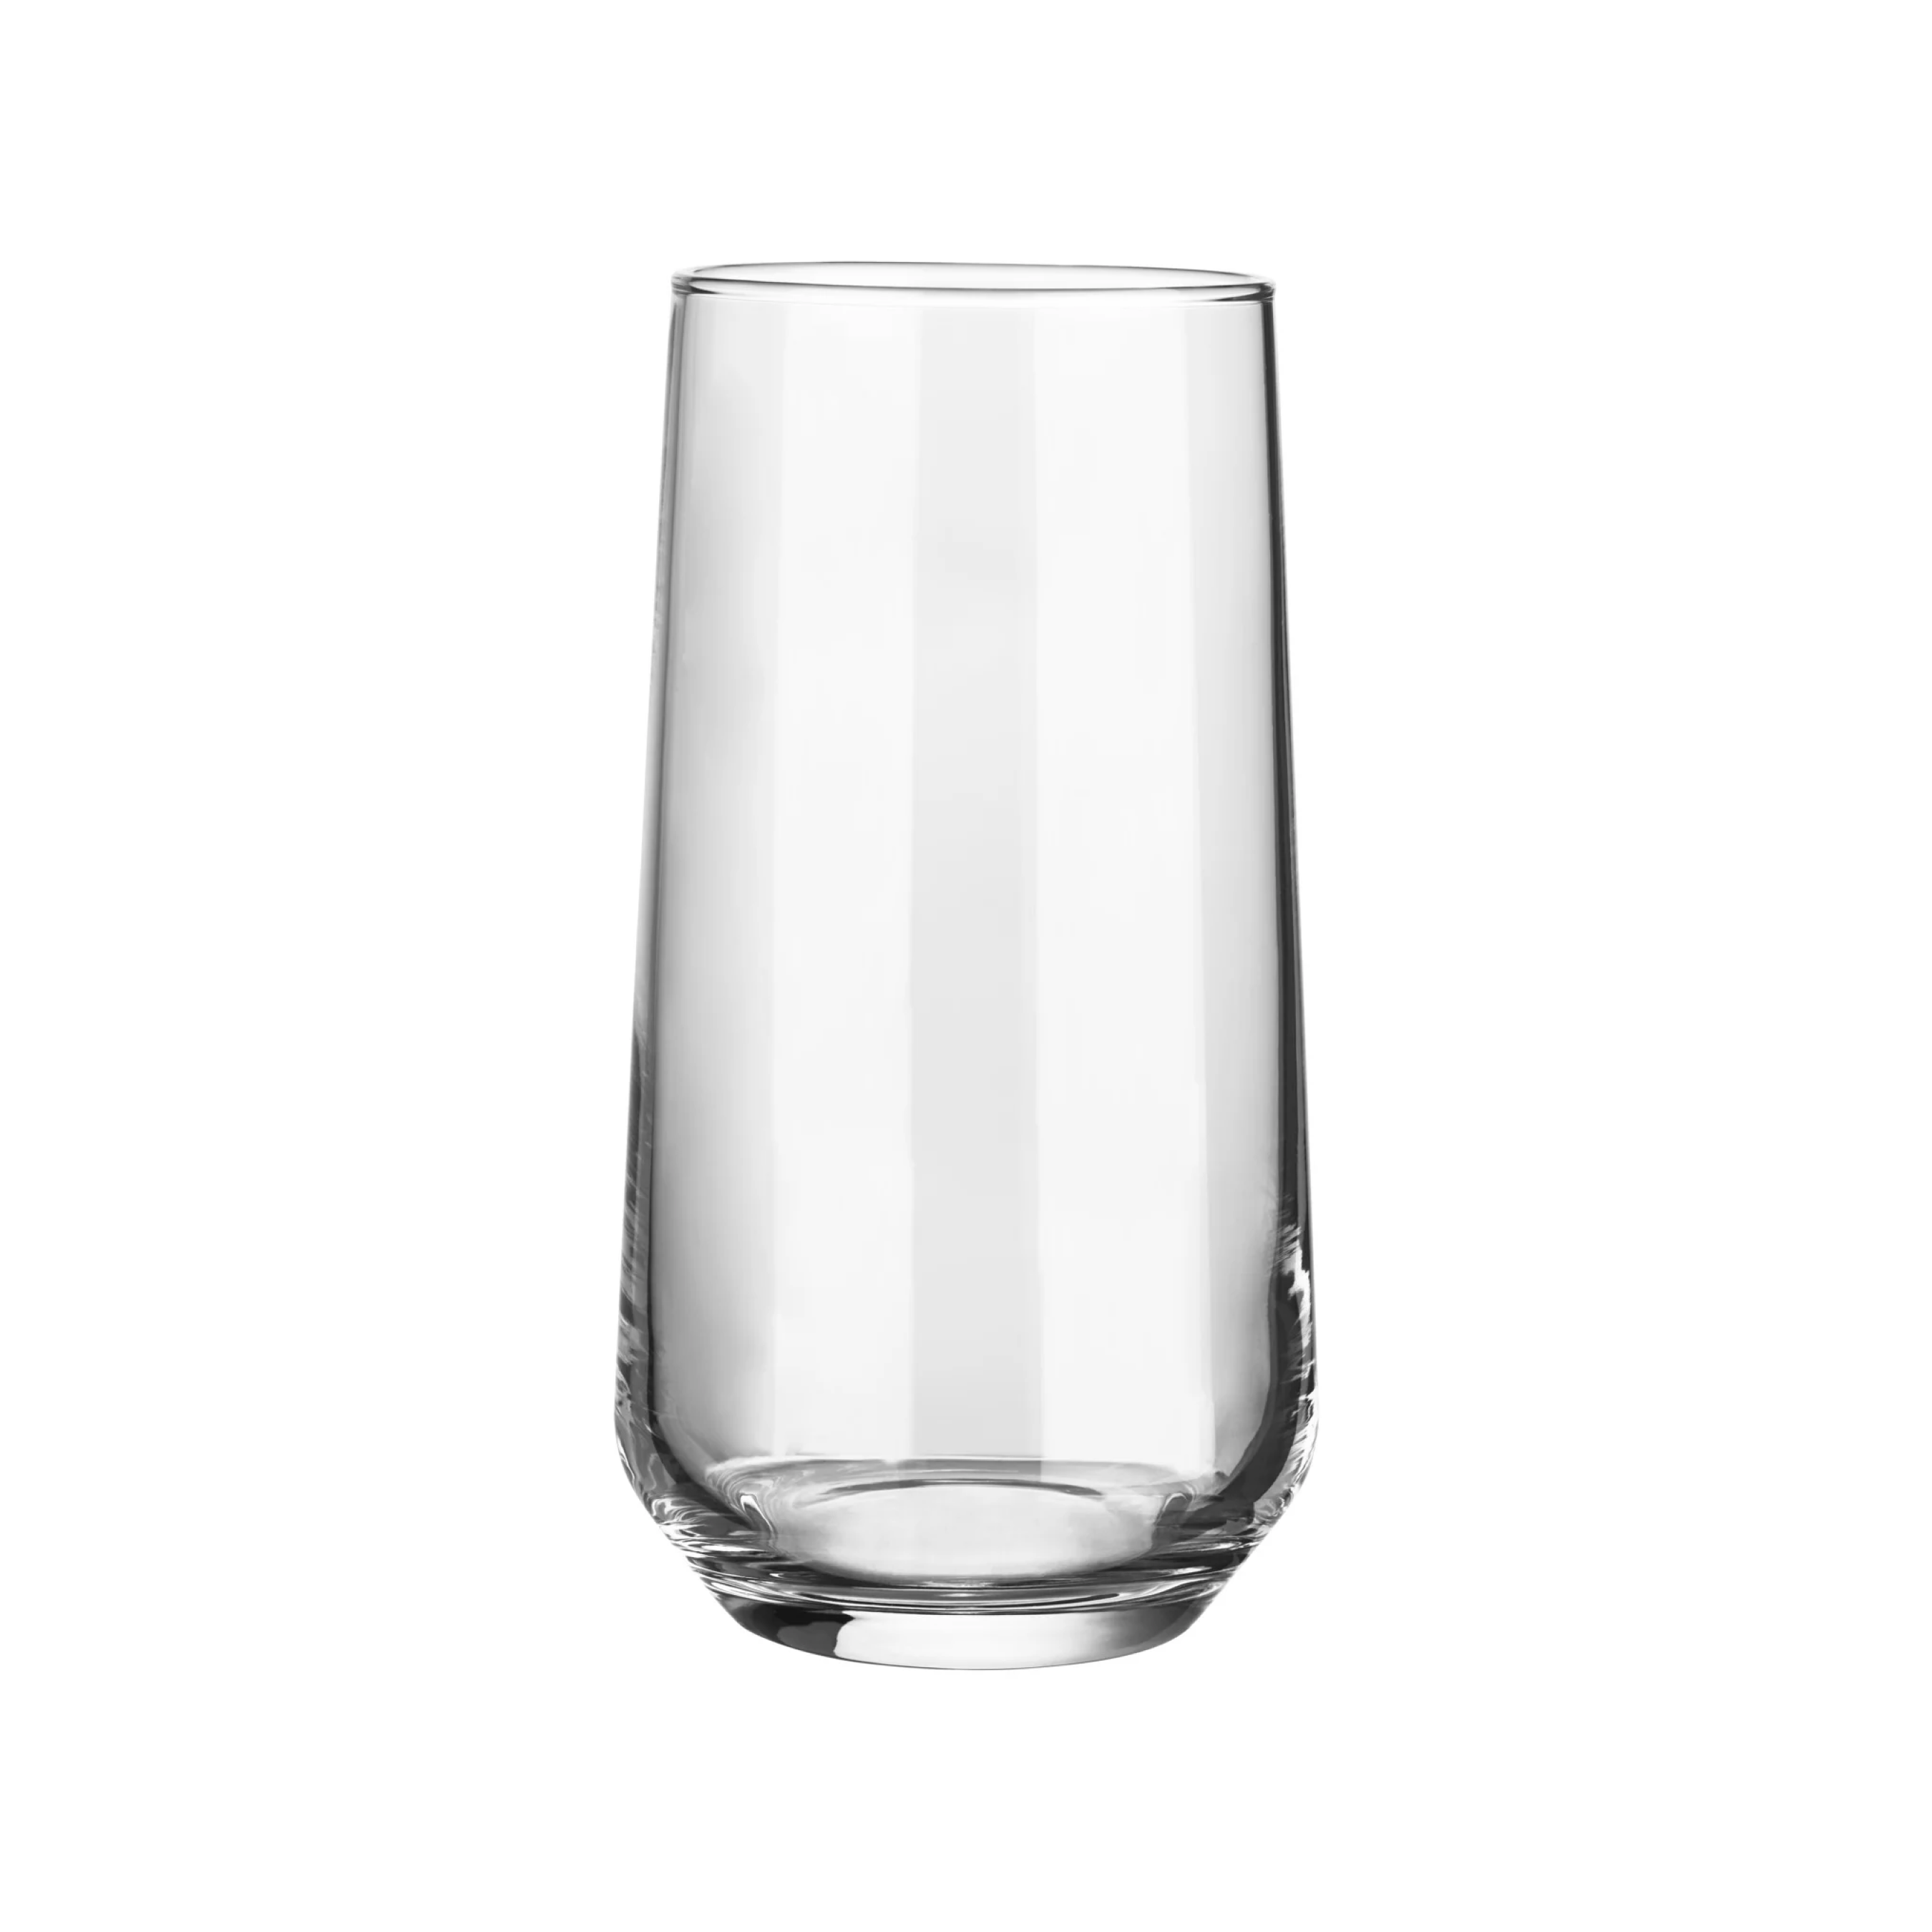 Gotë qelqi për koktej Allegra (3 copë), 0.47 L